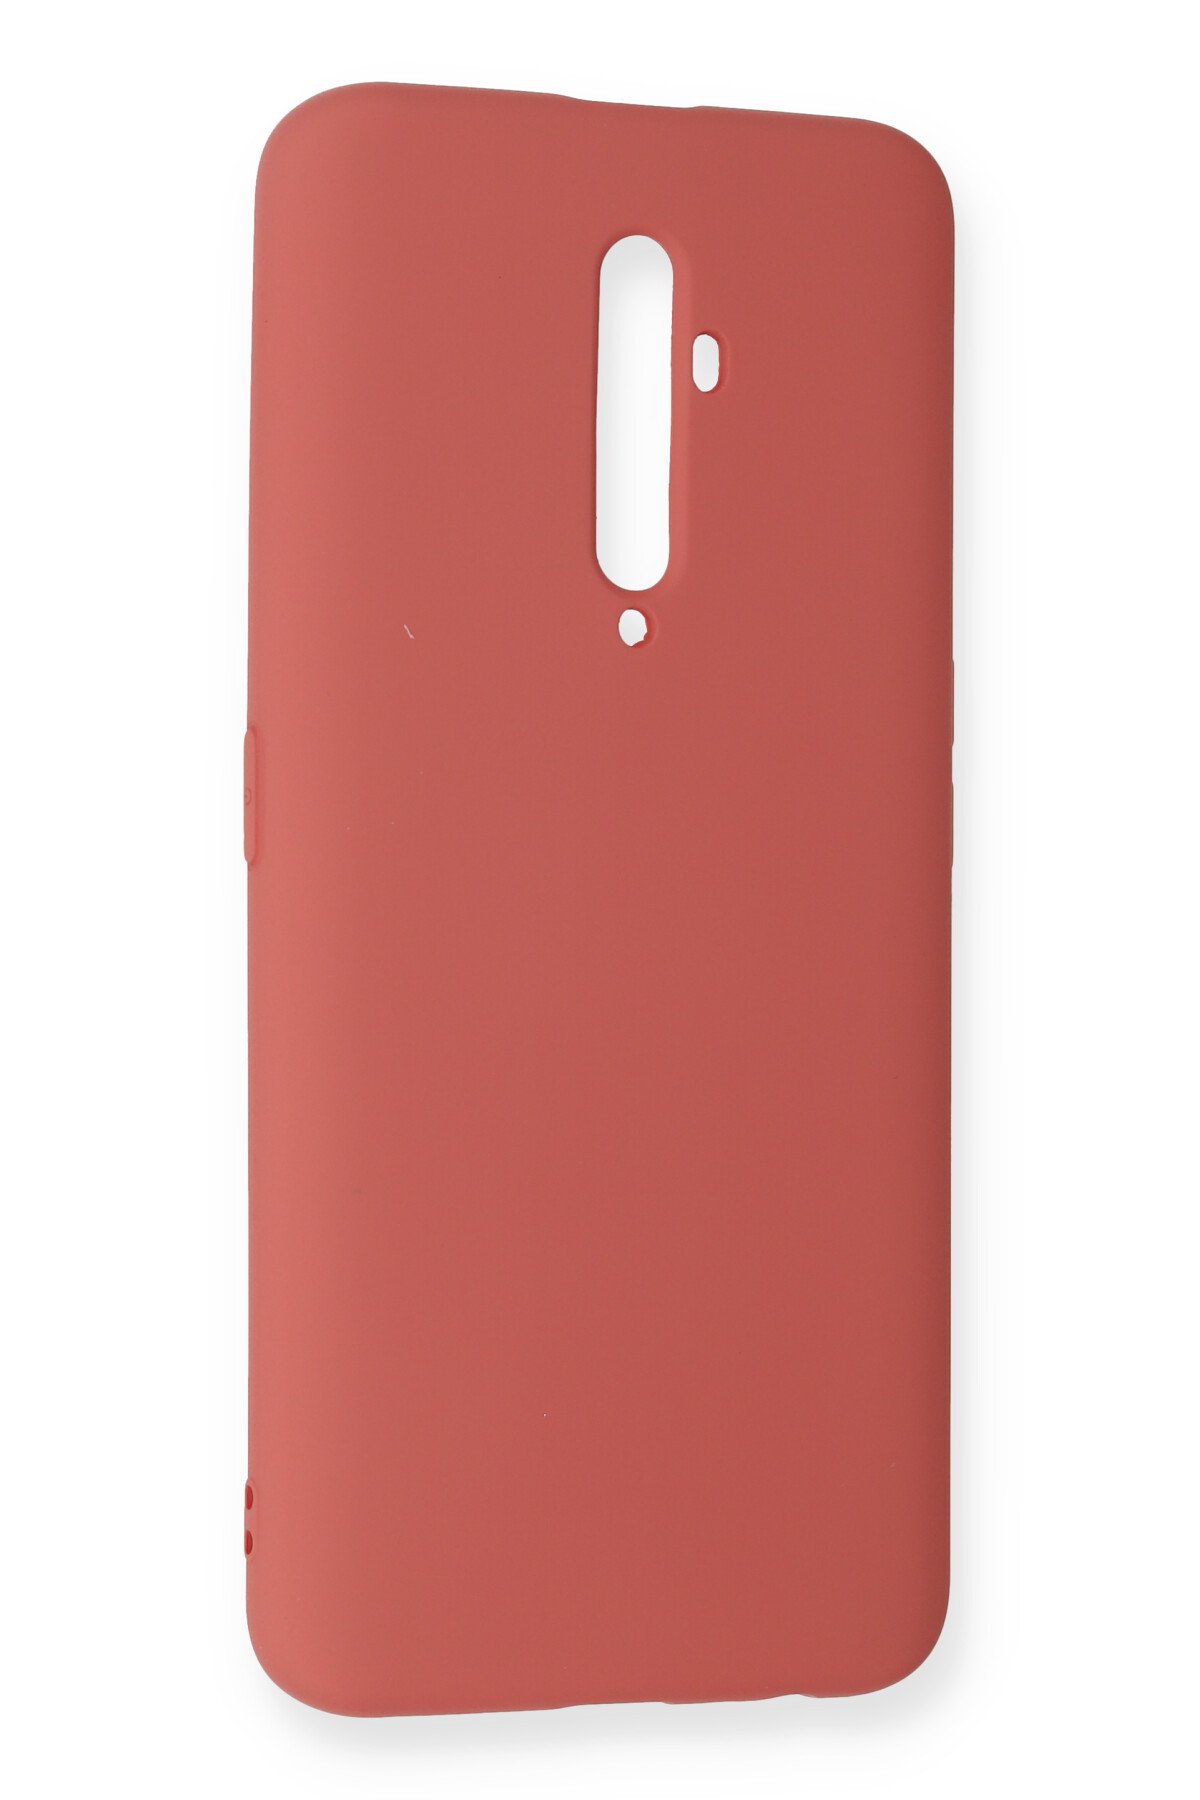 Newface Oppo Reno 2Z Kılıf Trend S Plus Kapaklı Kılıf - Kırmızı